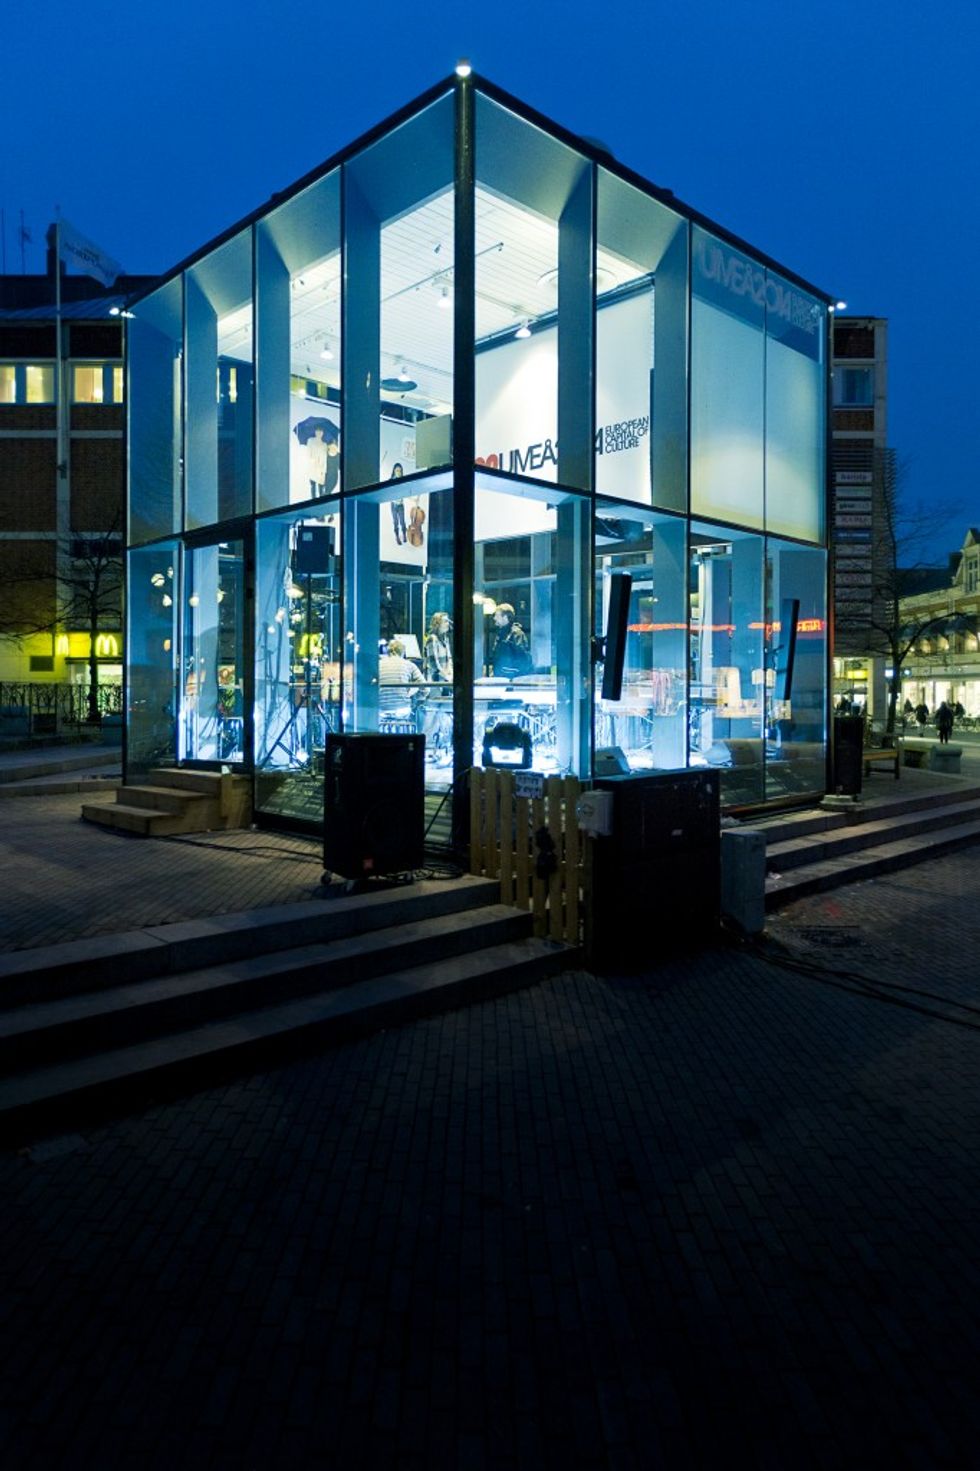 Umeå, Capitale della cultura 2014, invita i creativi al più grande concorso artistico europeo